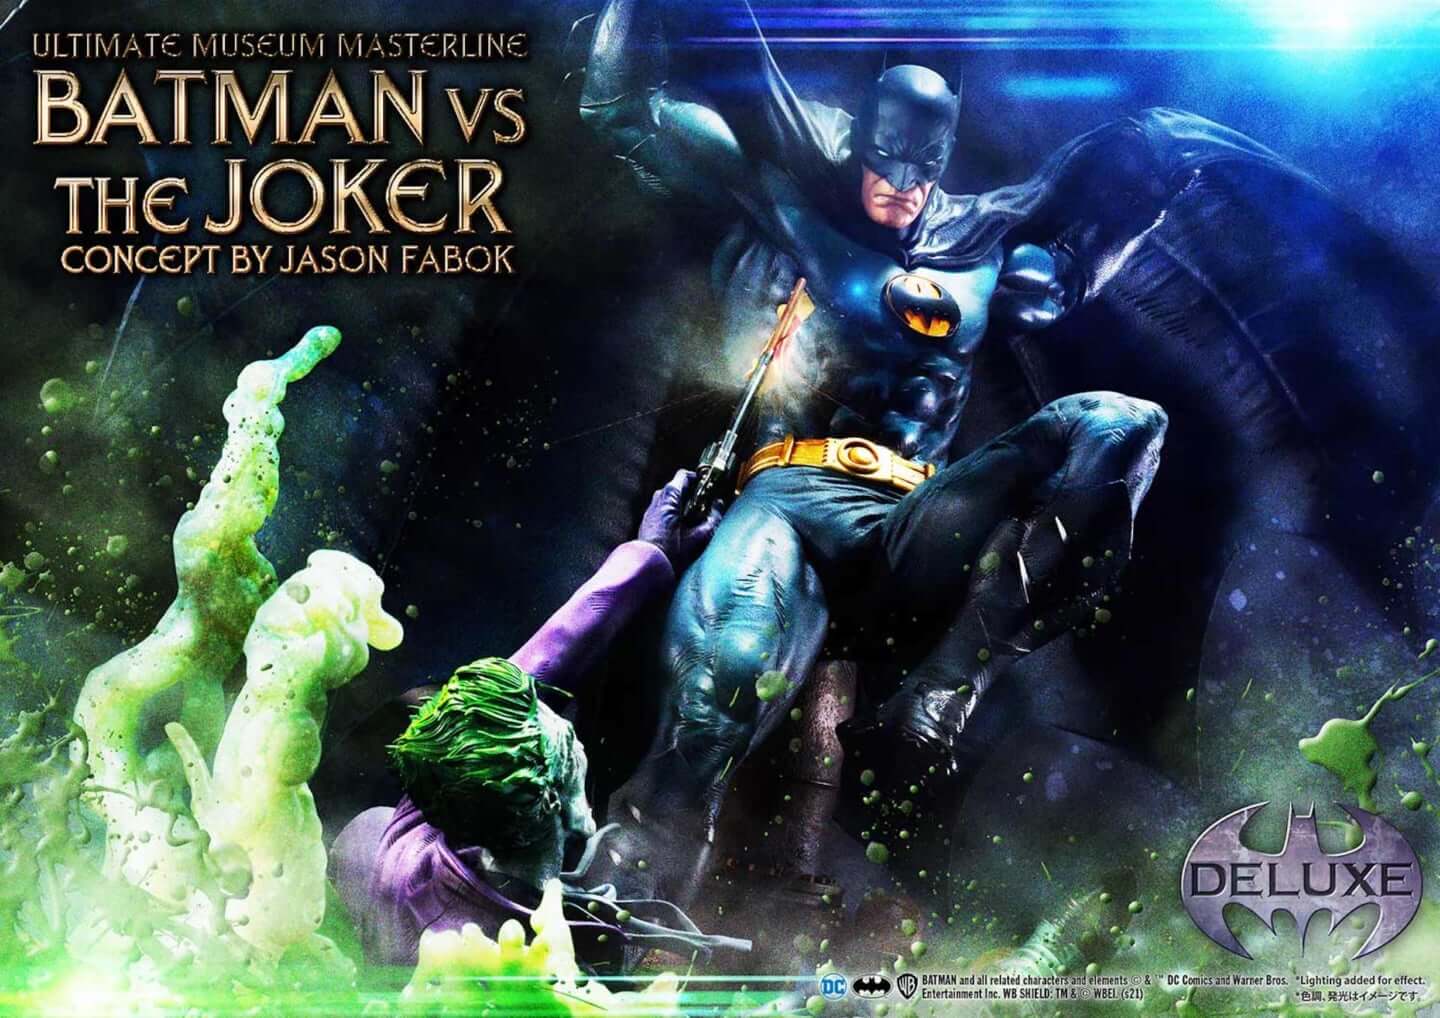 バットマンとジョーカーによる永遠の戦いがフィギュアに！「バットマンVSジョーカー “コンセプト by ジェイソン・ファボック”」が予約受付スタート  (2021年10月7日) - エキサイトニュース